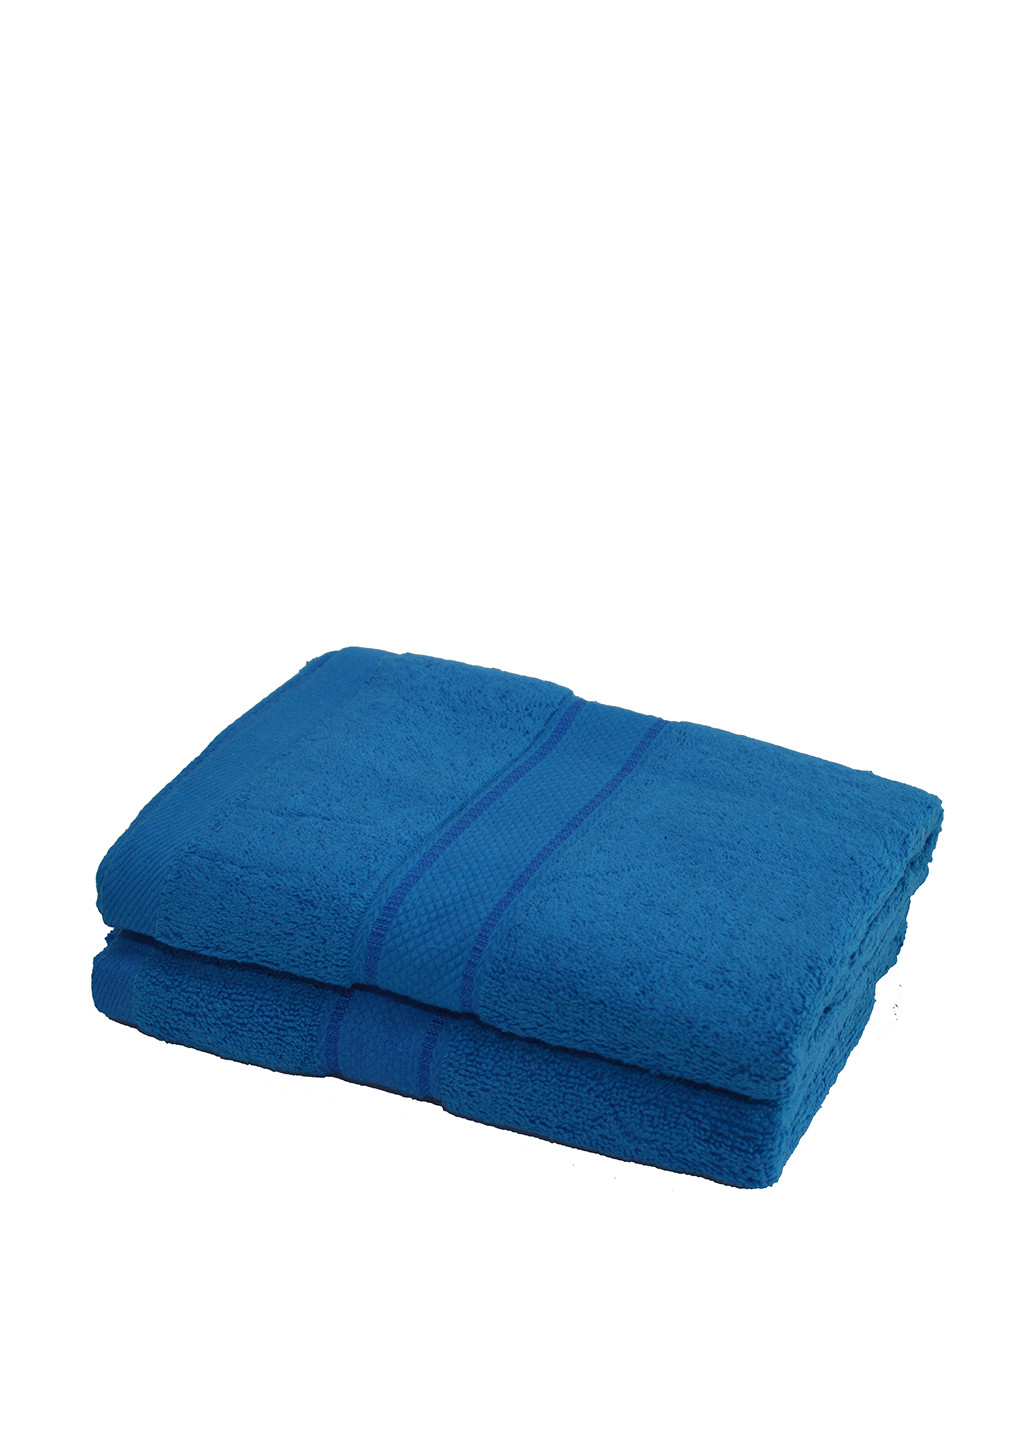 Moorvin полотенце, 50х100 см однотонный синий производство - Украина